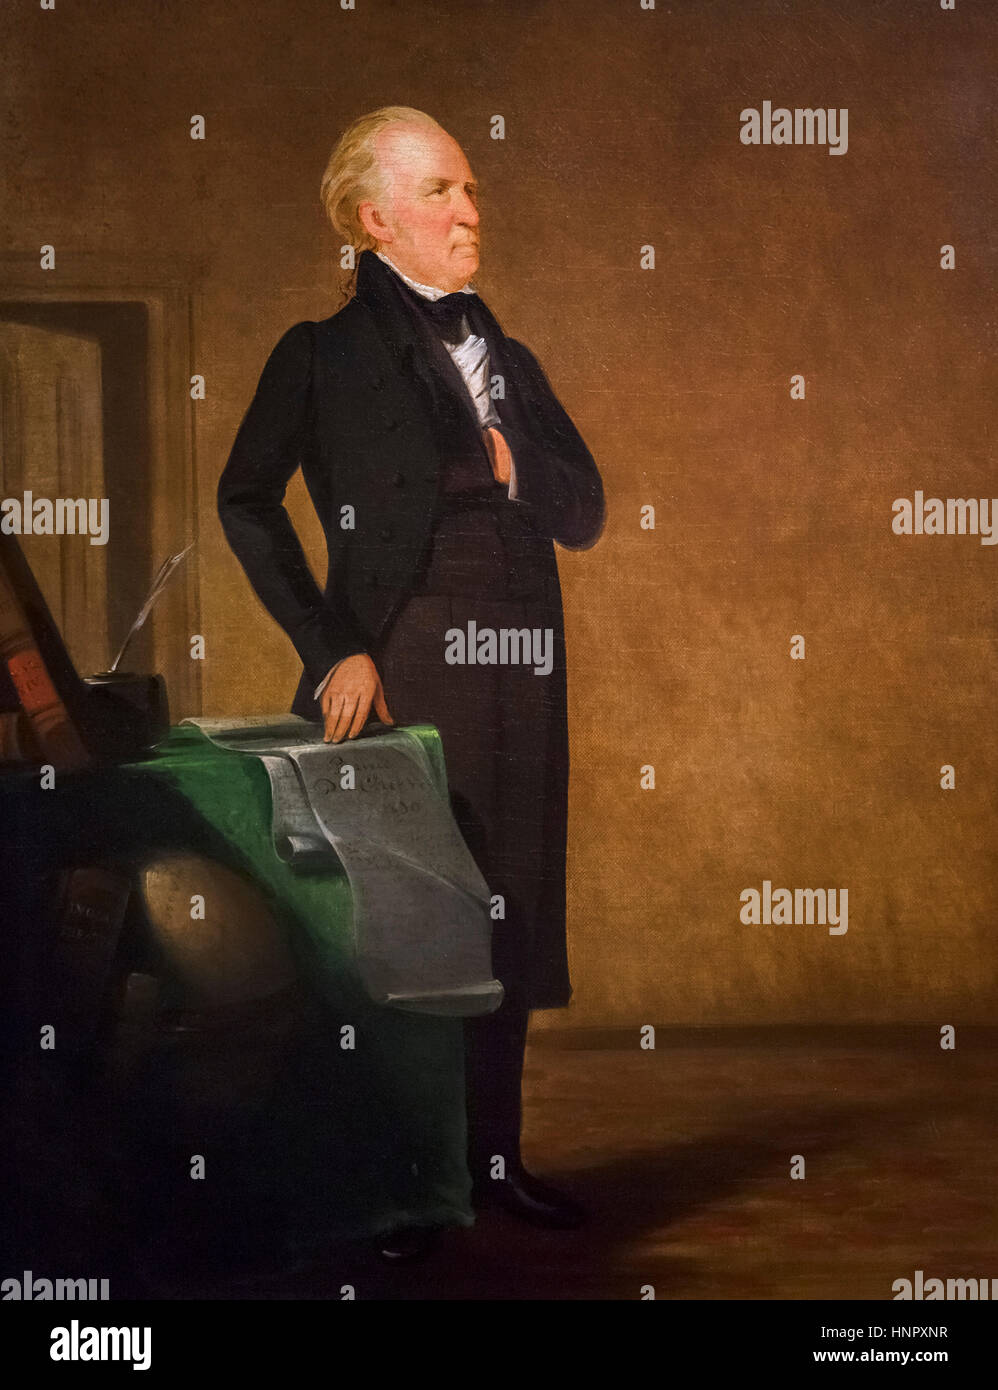 William Clark (1770-1838) als Gouverneur des Missouri-Territoriums, Porträt von George Catlin, Öl auf Leinwand, 1832. Clark ist berühmt für seine Rolle in der Lewis und Clark Expedition (Corps of Discovery-Expedition) von 1804. Stockfoto